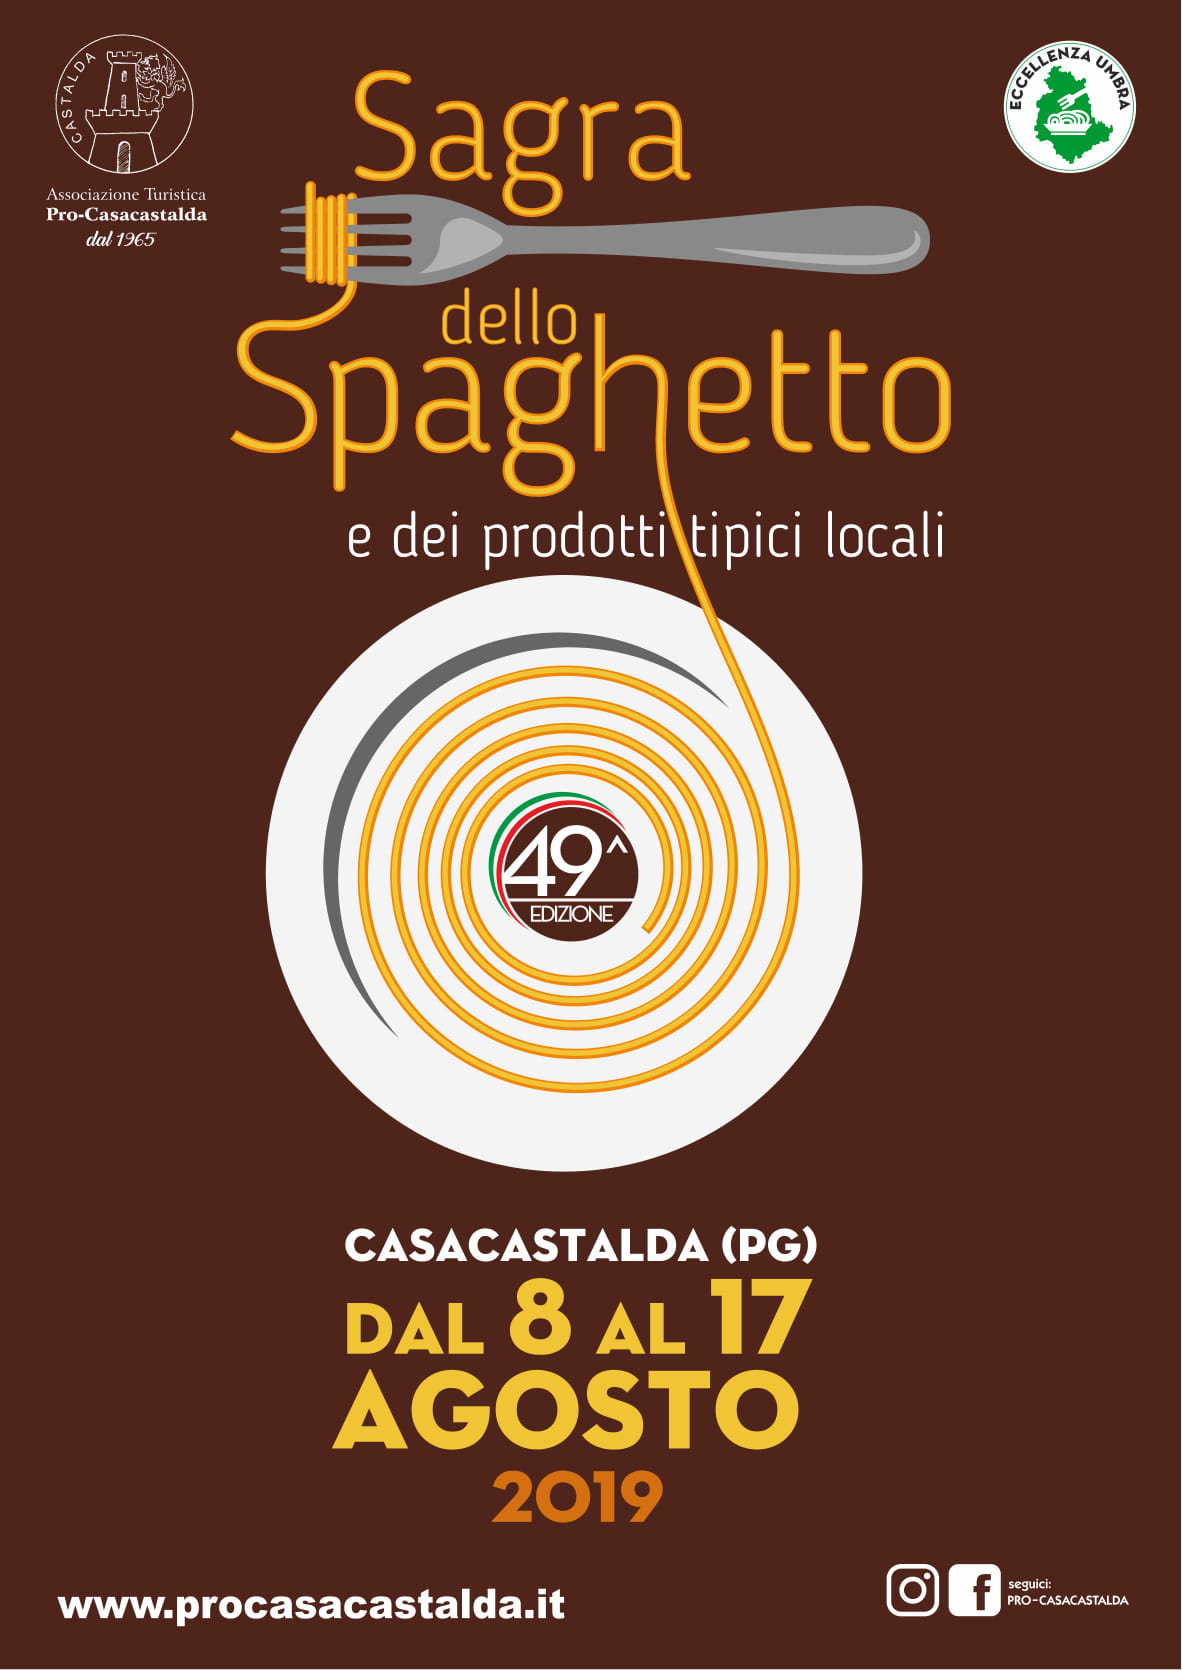 Volantino Sagra dello Spaghetto di Casacastalda 2019 49ma Edizione